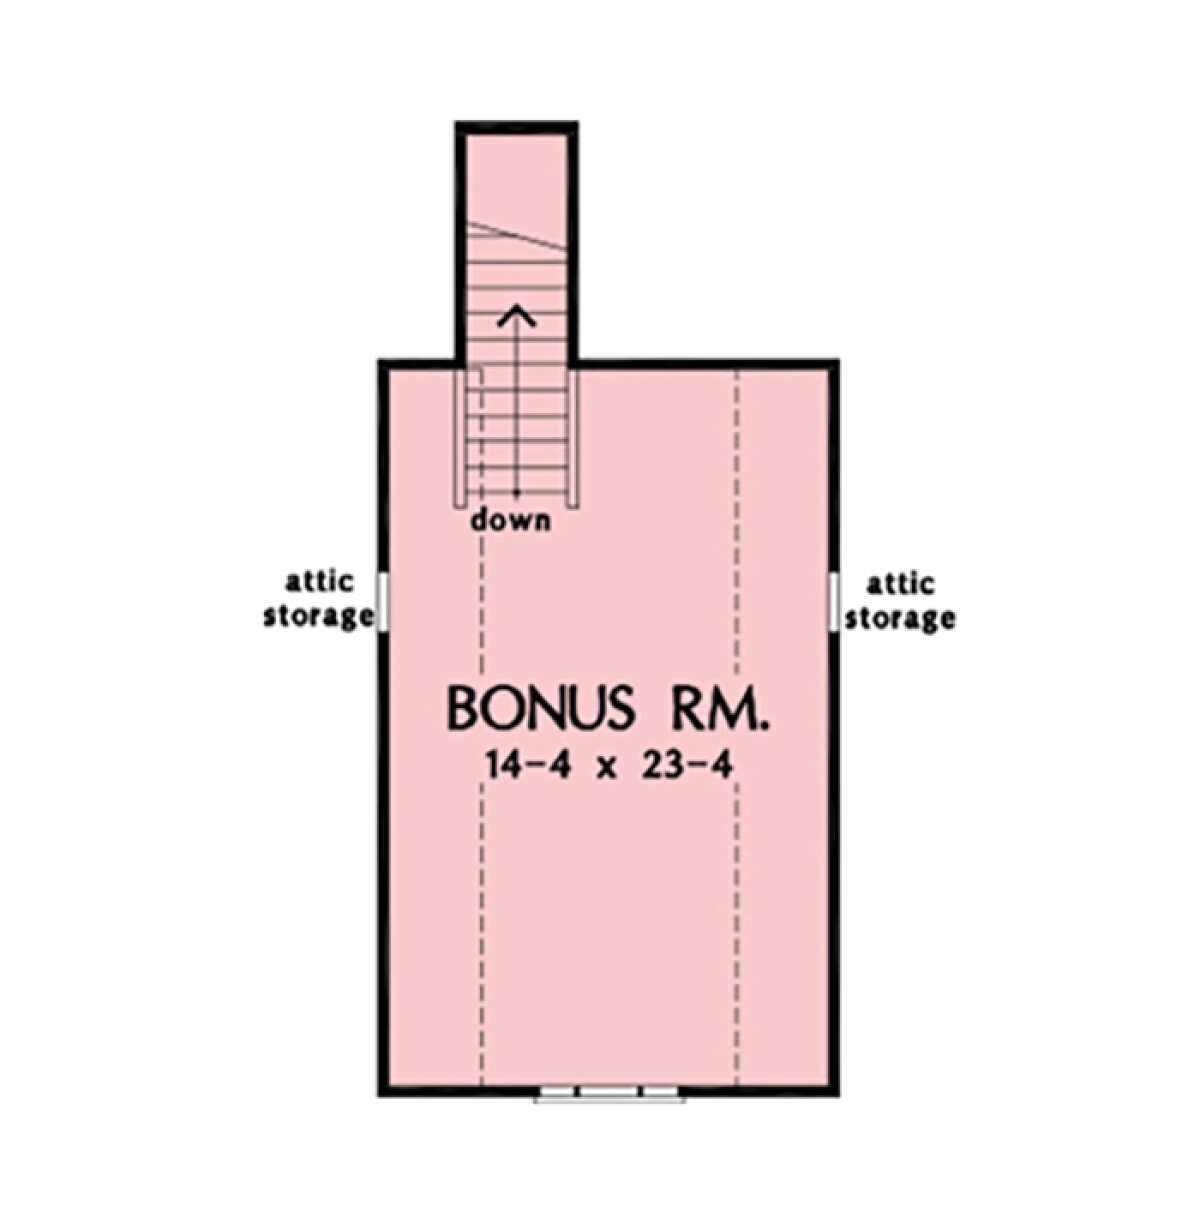 Bonus Room for House Plan #2865-00259